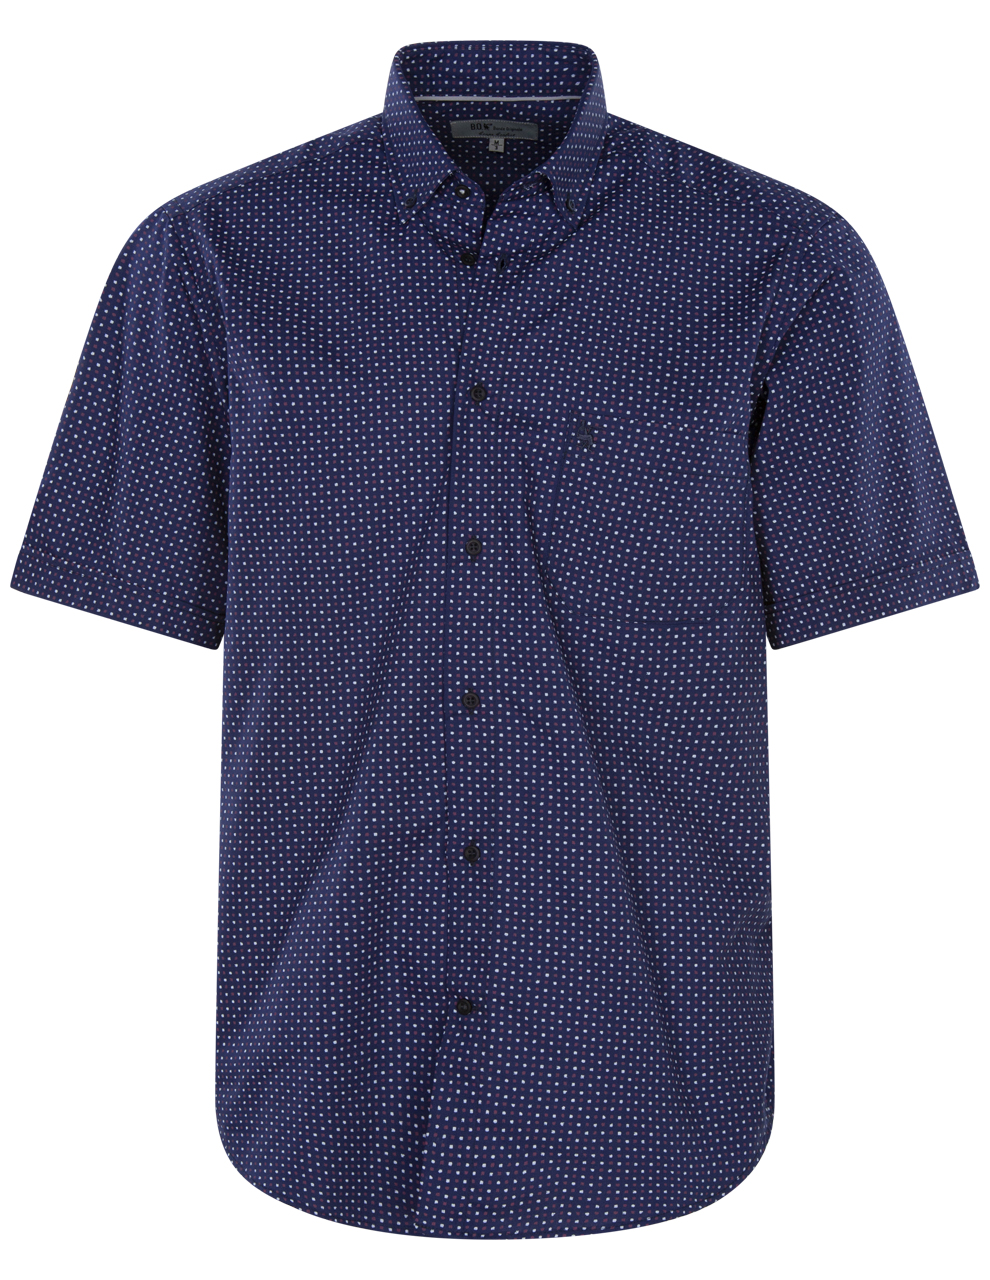 chemise bande originale en coton avec manches courtes et col américain bleu marine